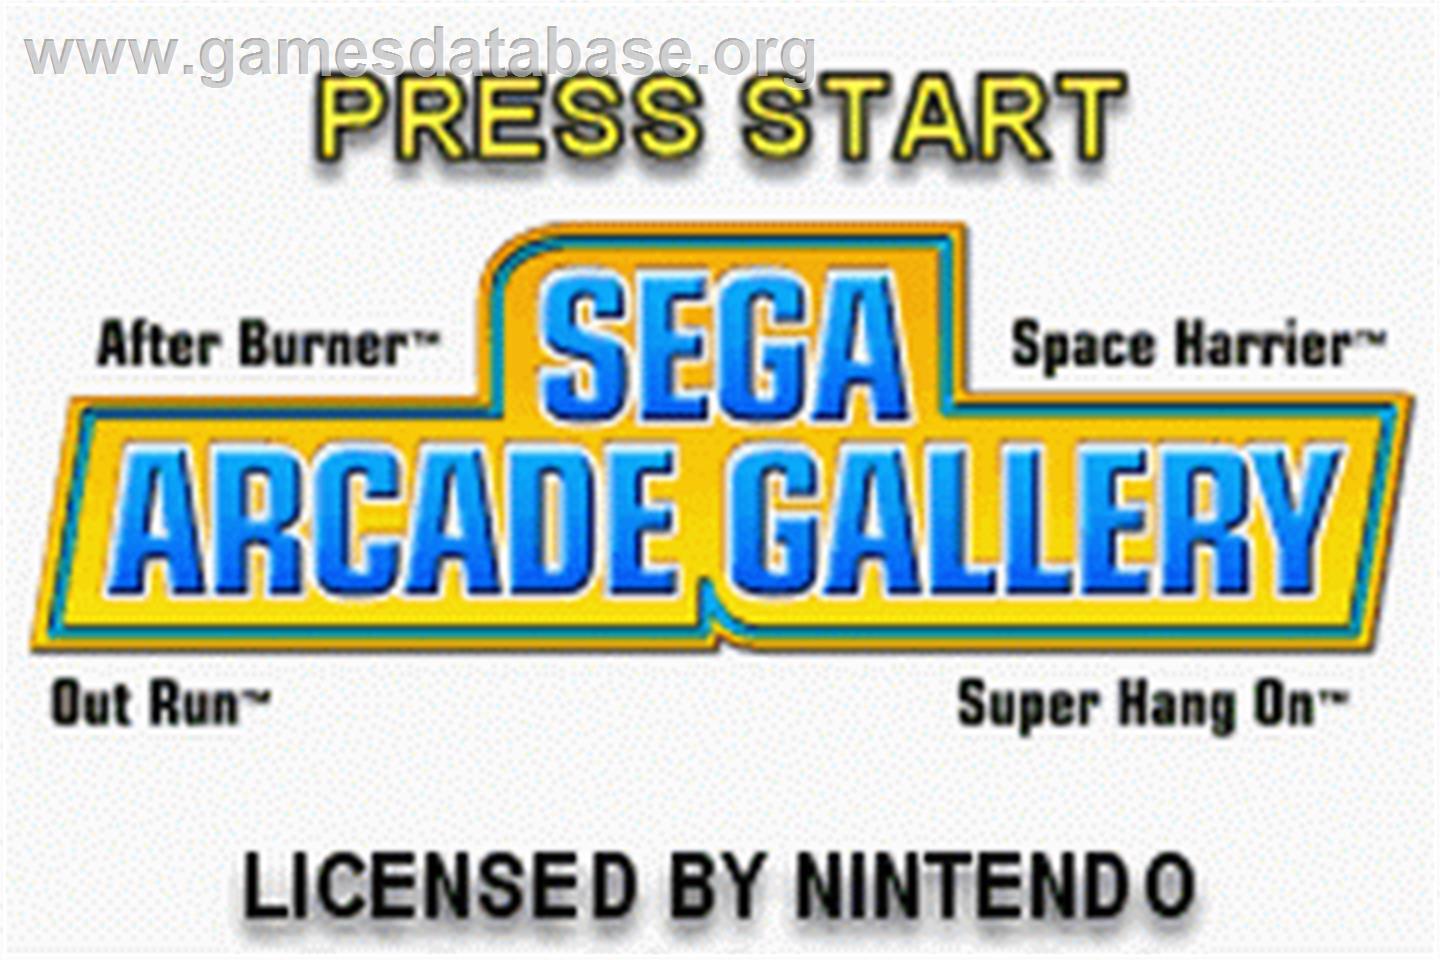 Sega Arcade Gallery - Nintendo Game Boy Advance - Artwork - Title Screen